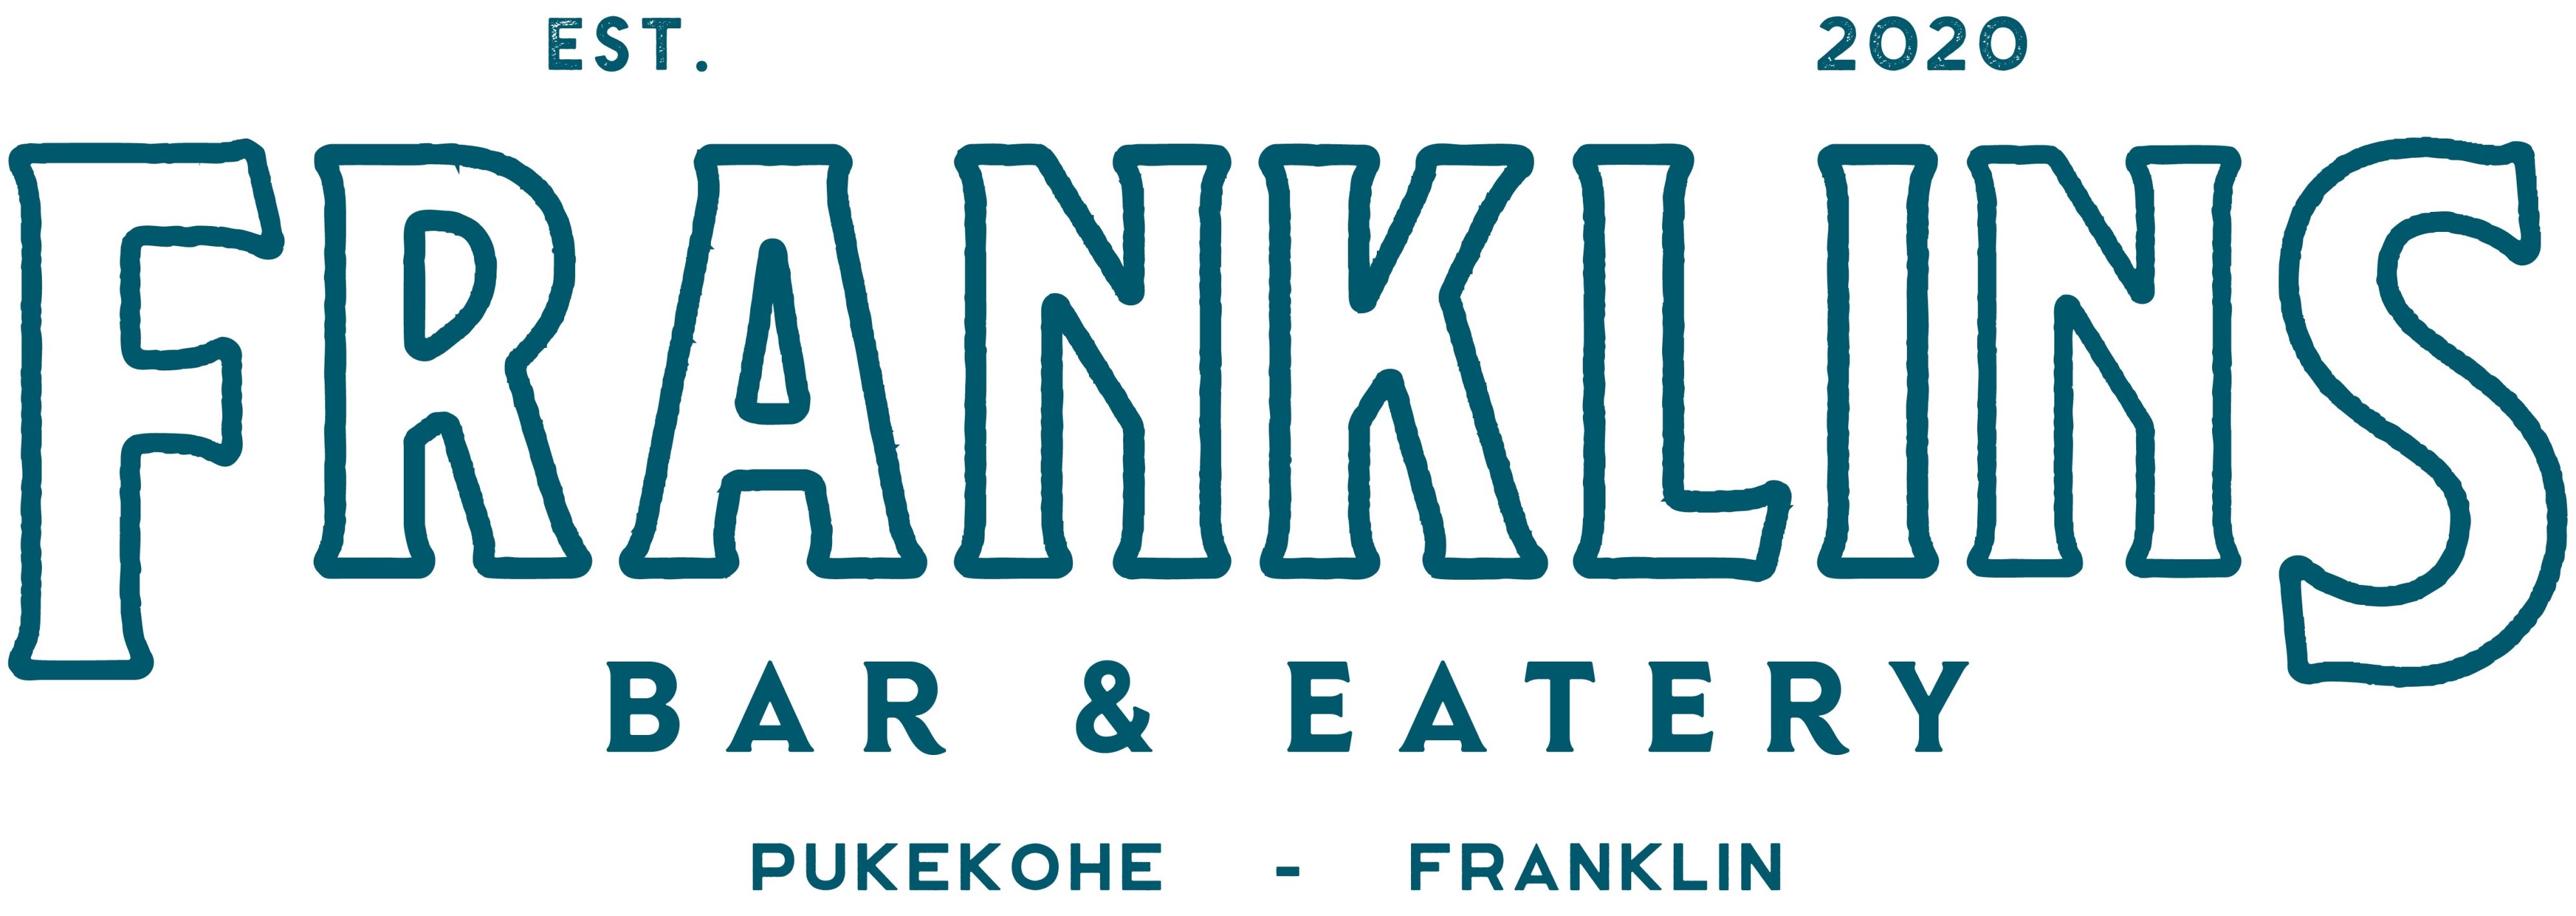 Franklins (002).jpg